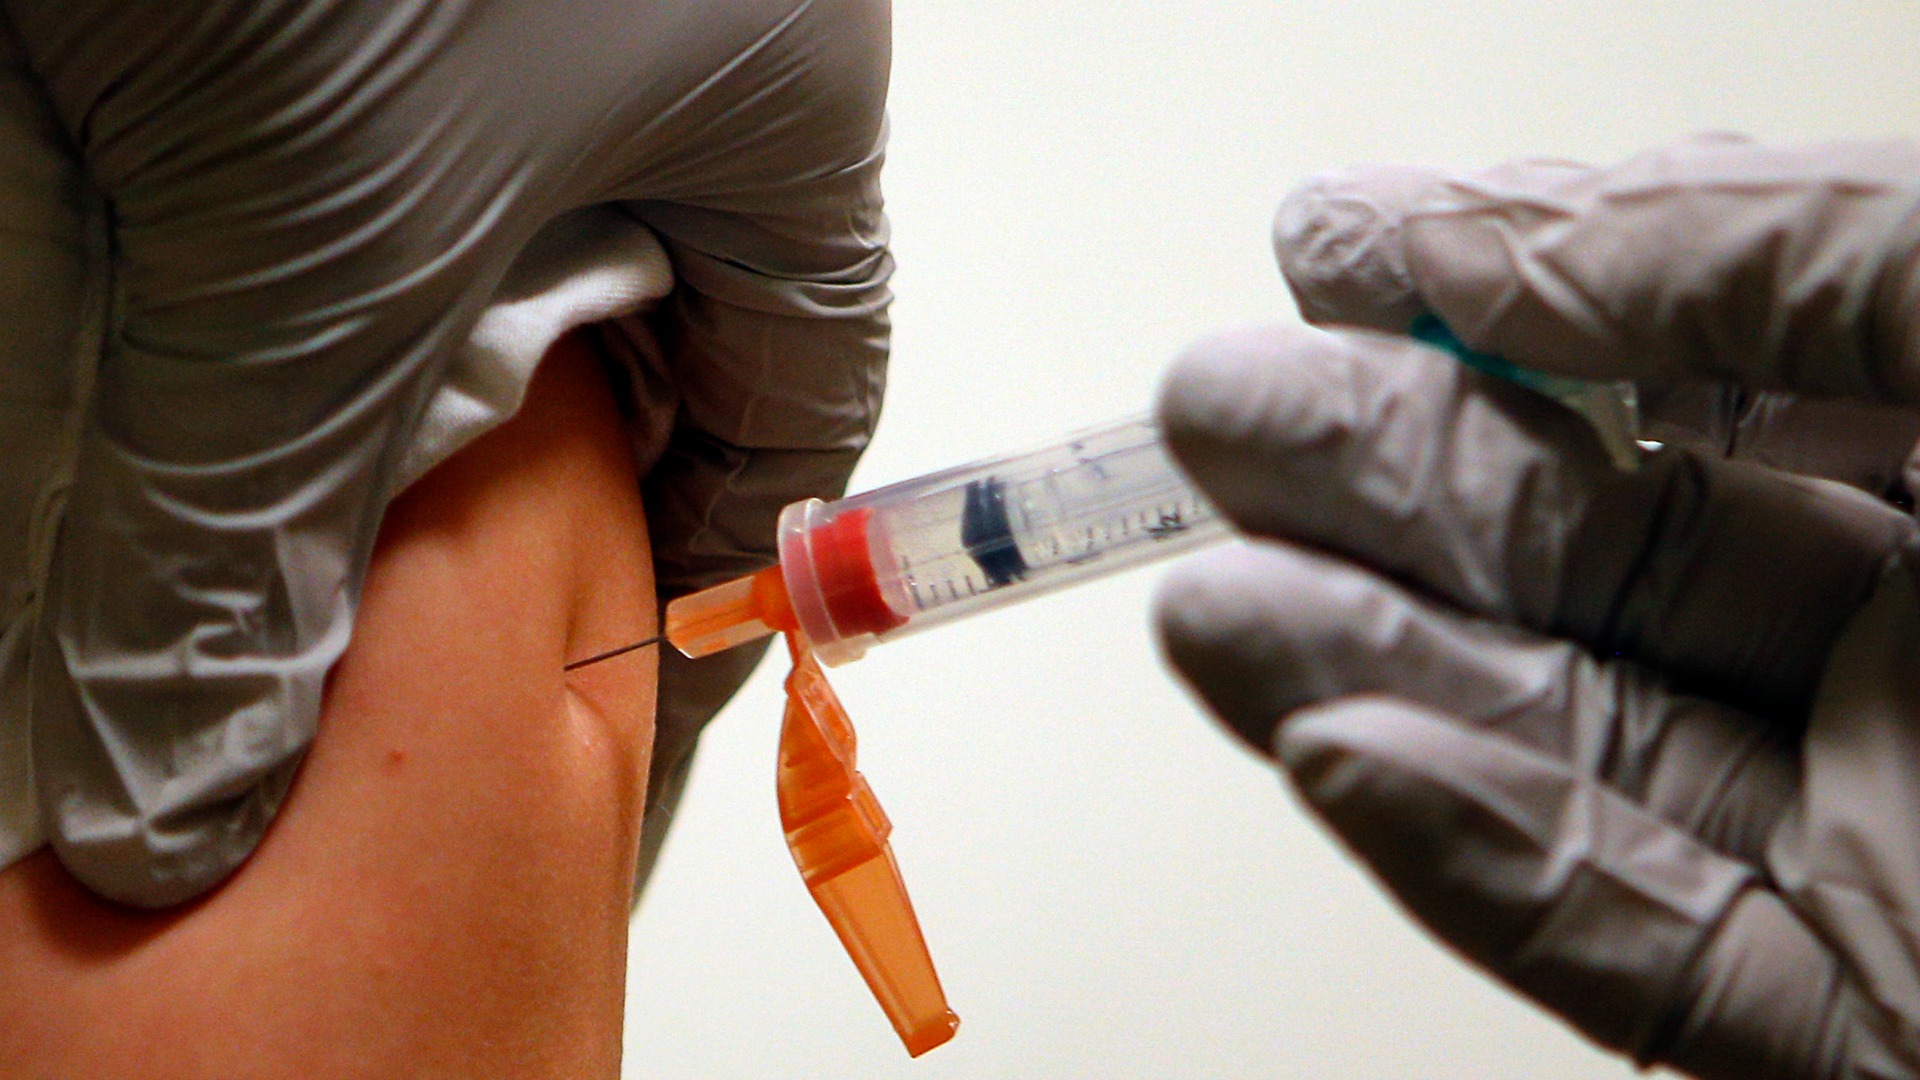 Los peligrosos mitos sobre las vacunas que ponen en riesgo la salud de todos